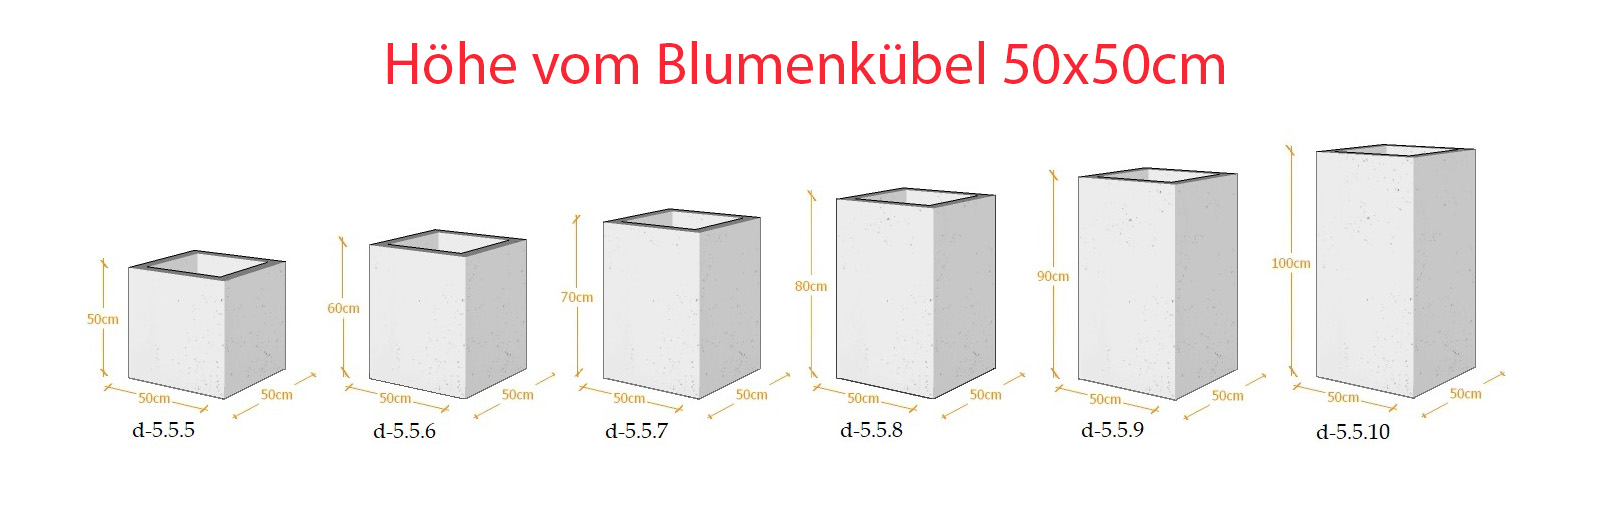 Lieferbare Abmessungen - Blumenkübel aus Architekturbeton 50x50cm x (50h-60h-70h-80h-90h-100h)